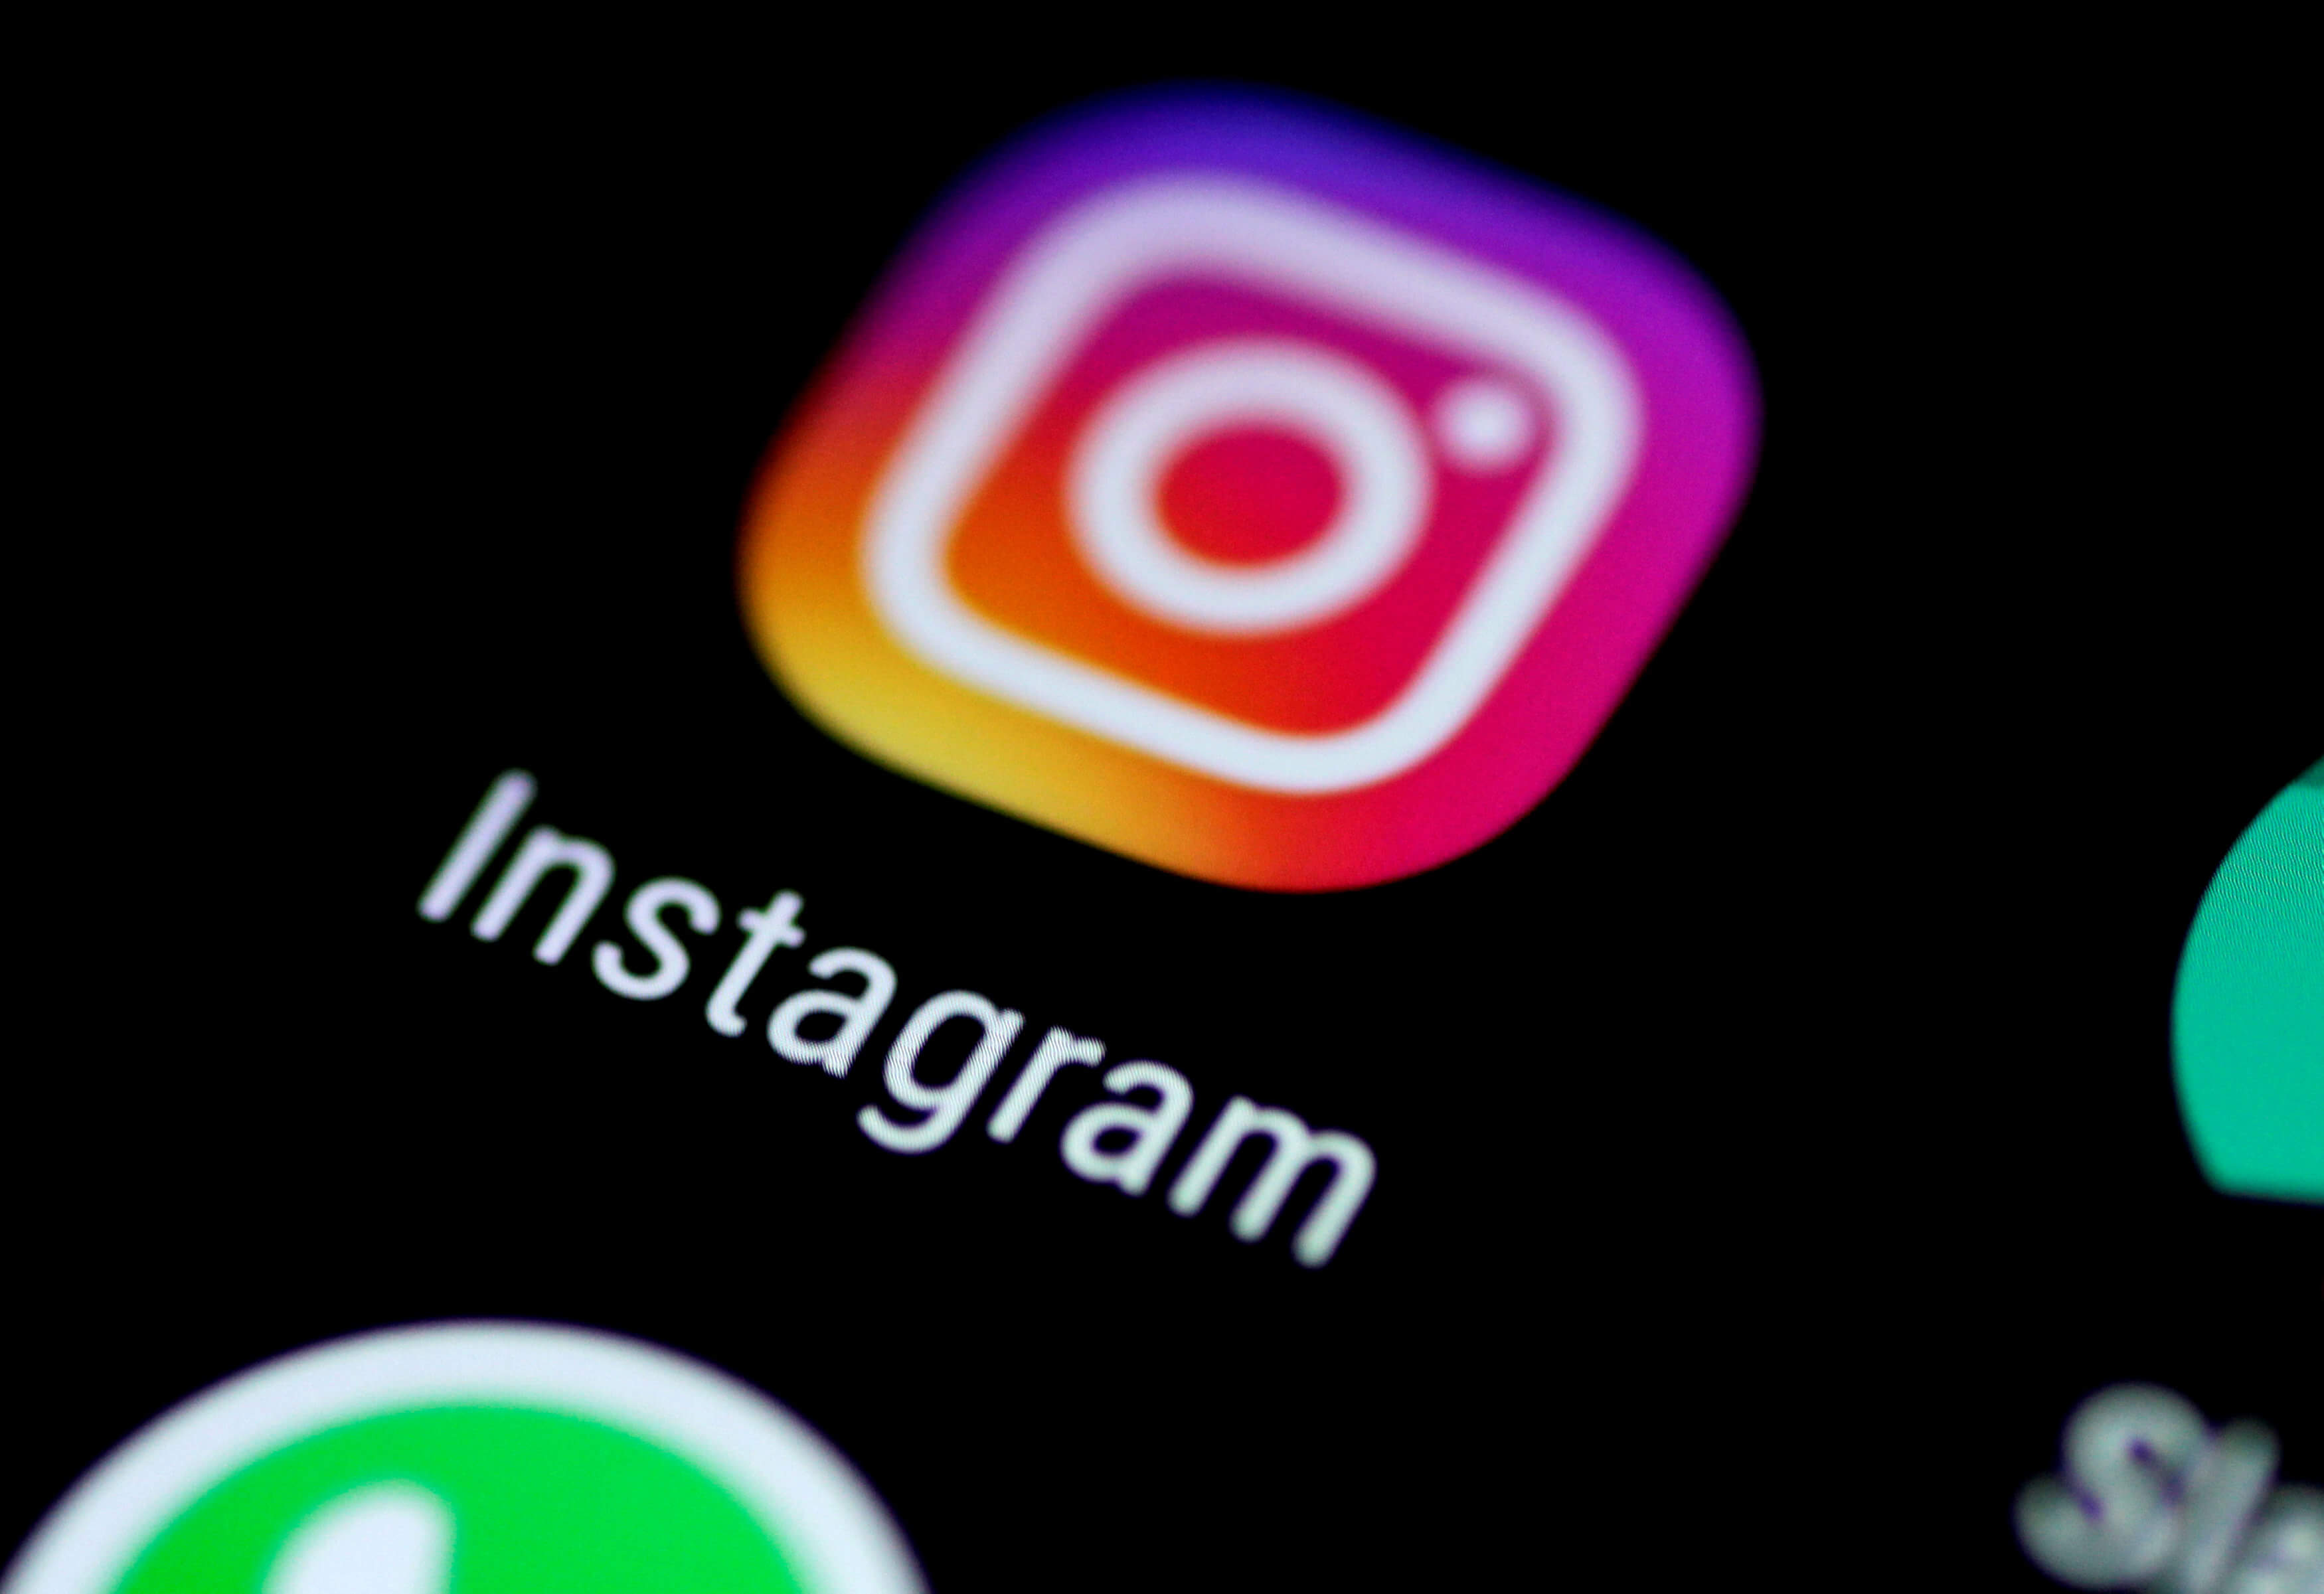 Λιβαδειά: Μέσω Instagram προσέγγισε ο 44χρονος την 15χρονη – «Δεν θυμάμαι να είπε όχι» λέει για τον βιασμό